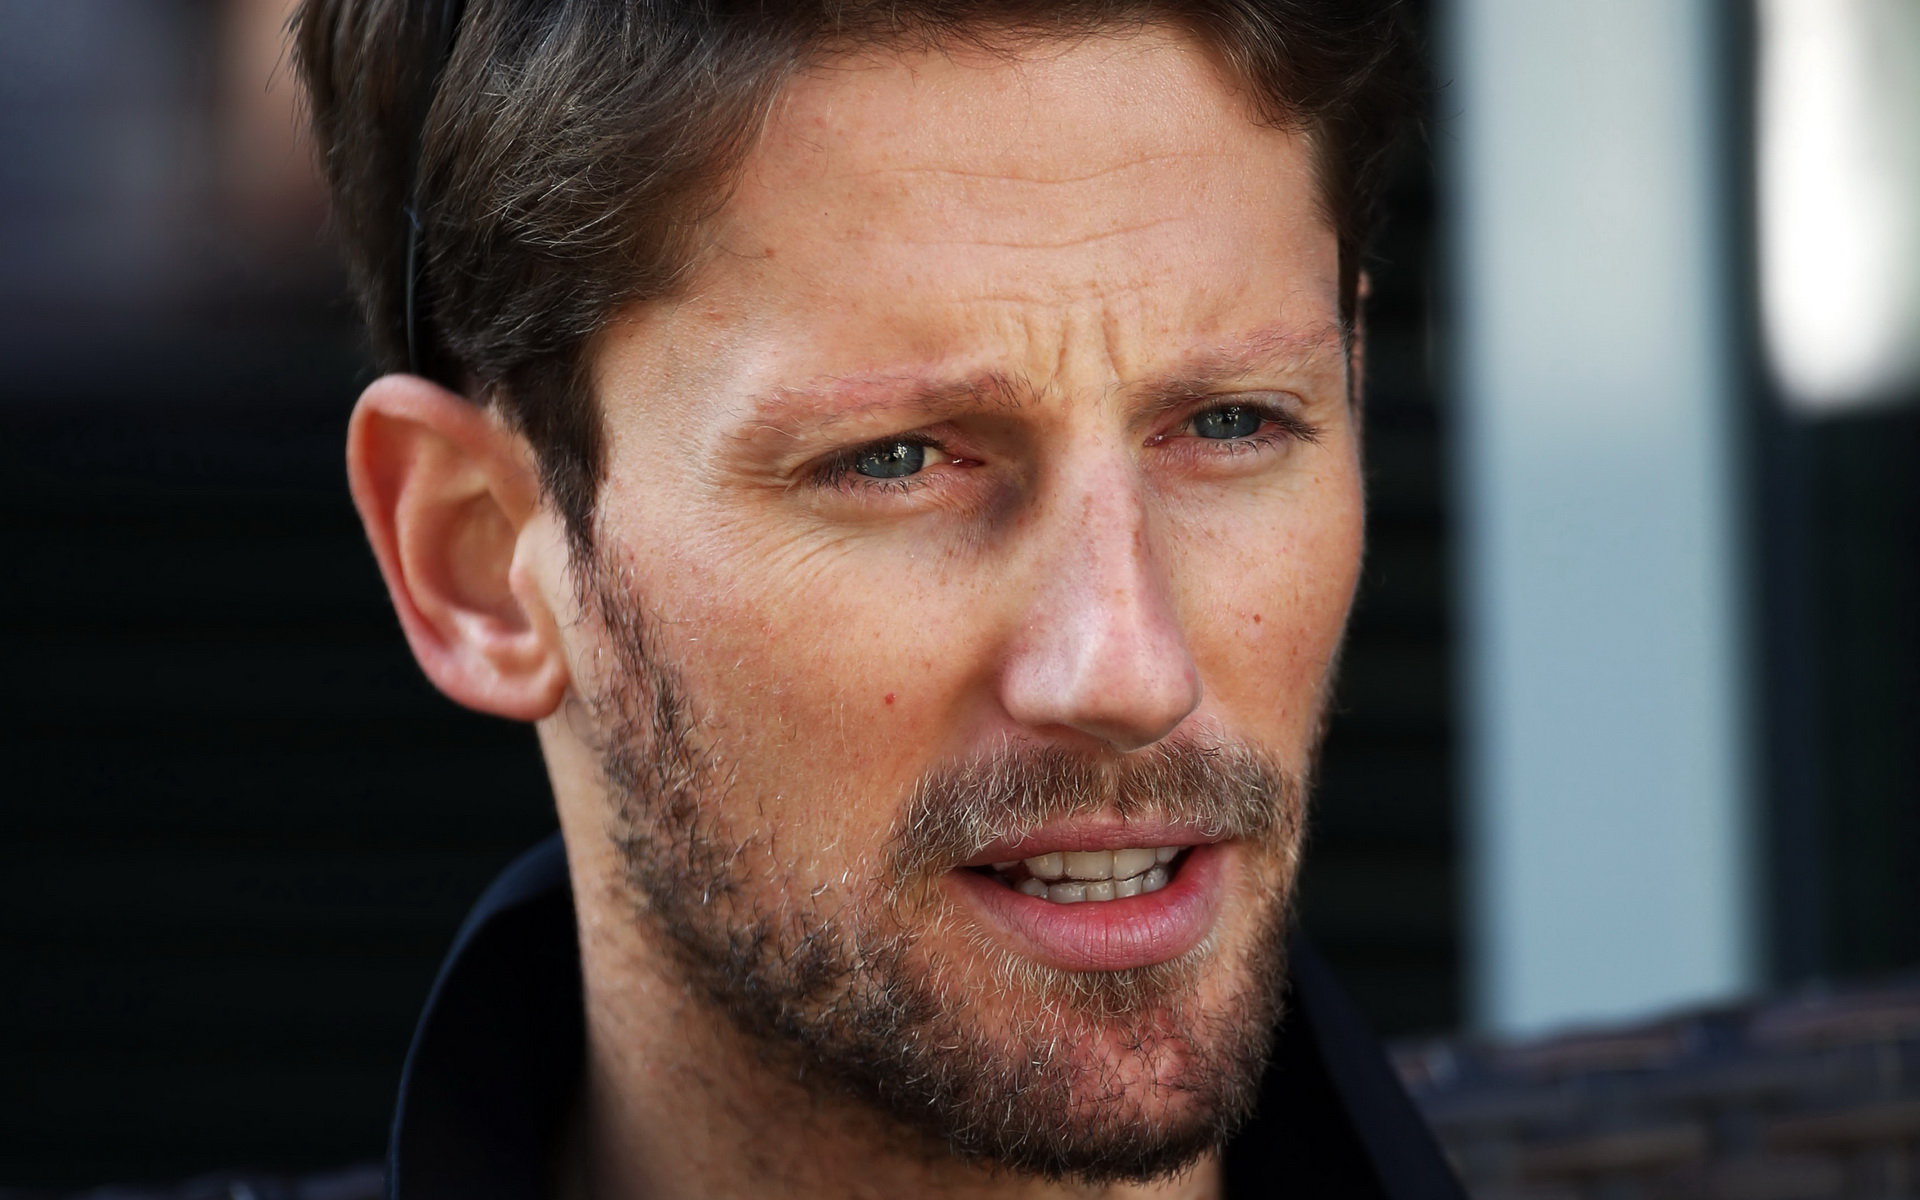 Romain Grosjean riziko nevylučuje, ale na budoucnost hledí optimisticky